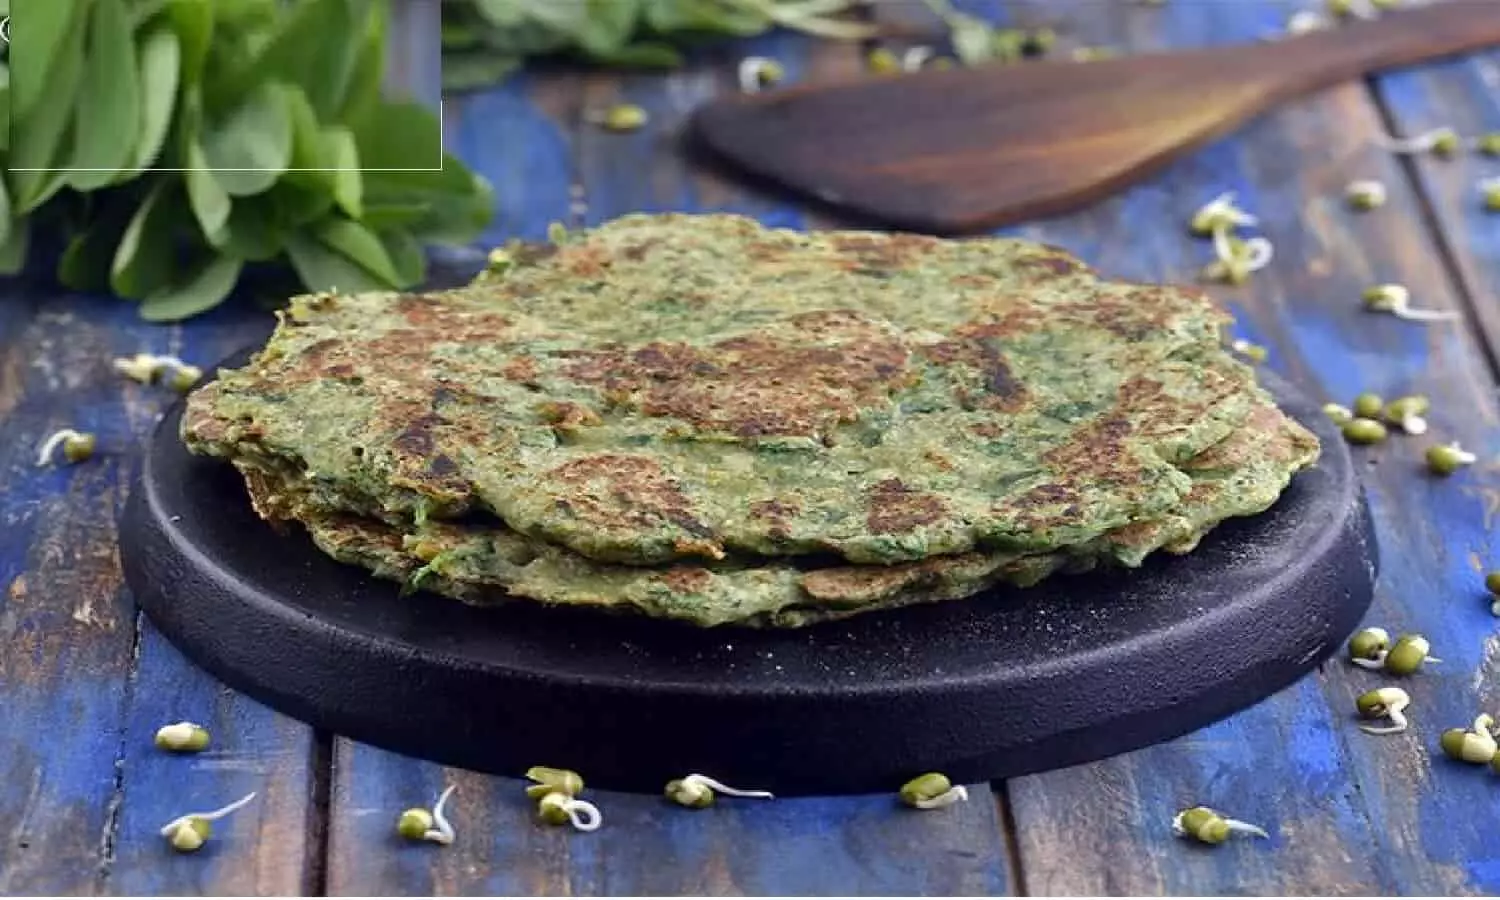 Moong And Methi Cheela Recipe in Hindi: ऐसे बनाएं मूंग और मेथी का चीला , जानिए विधि?